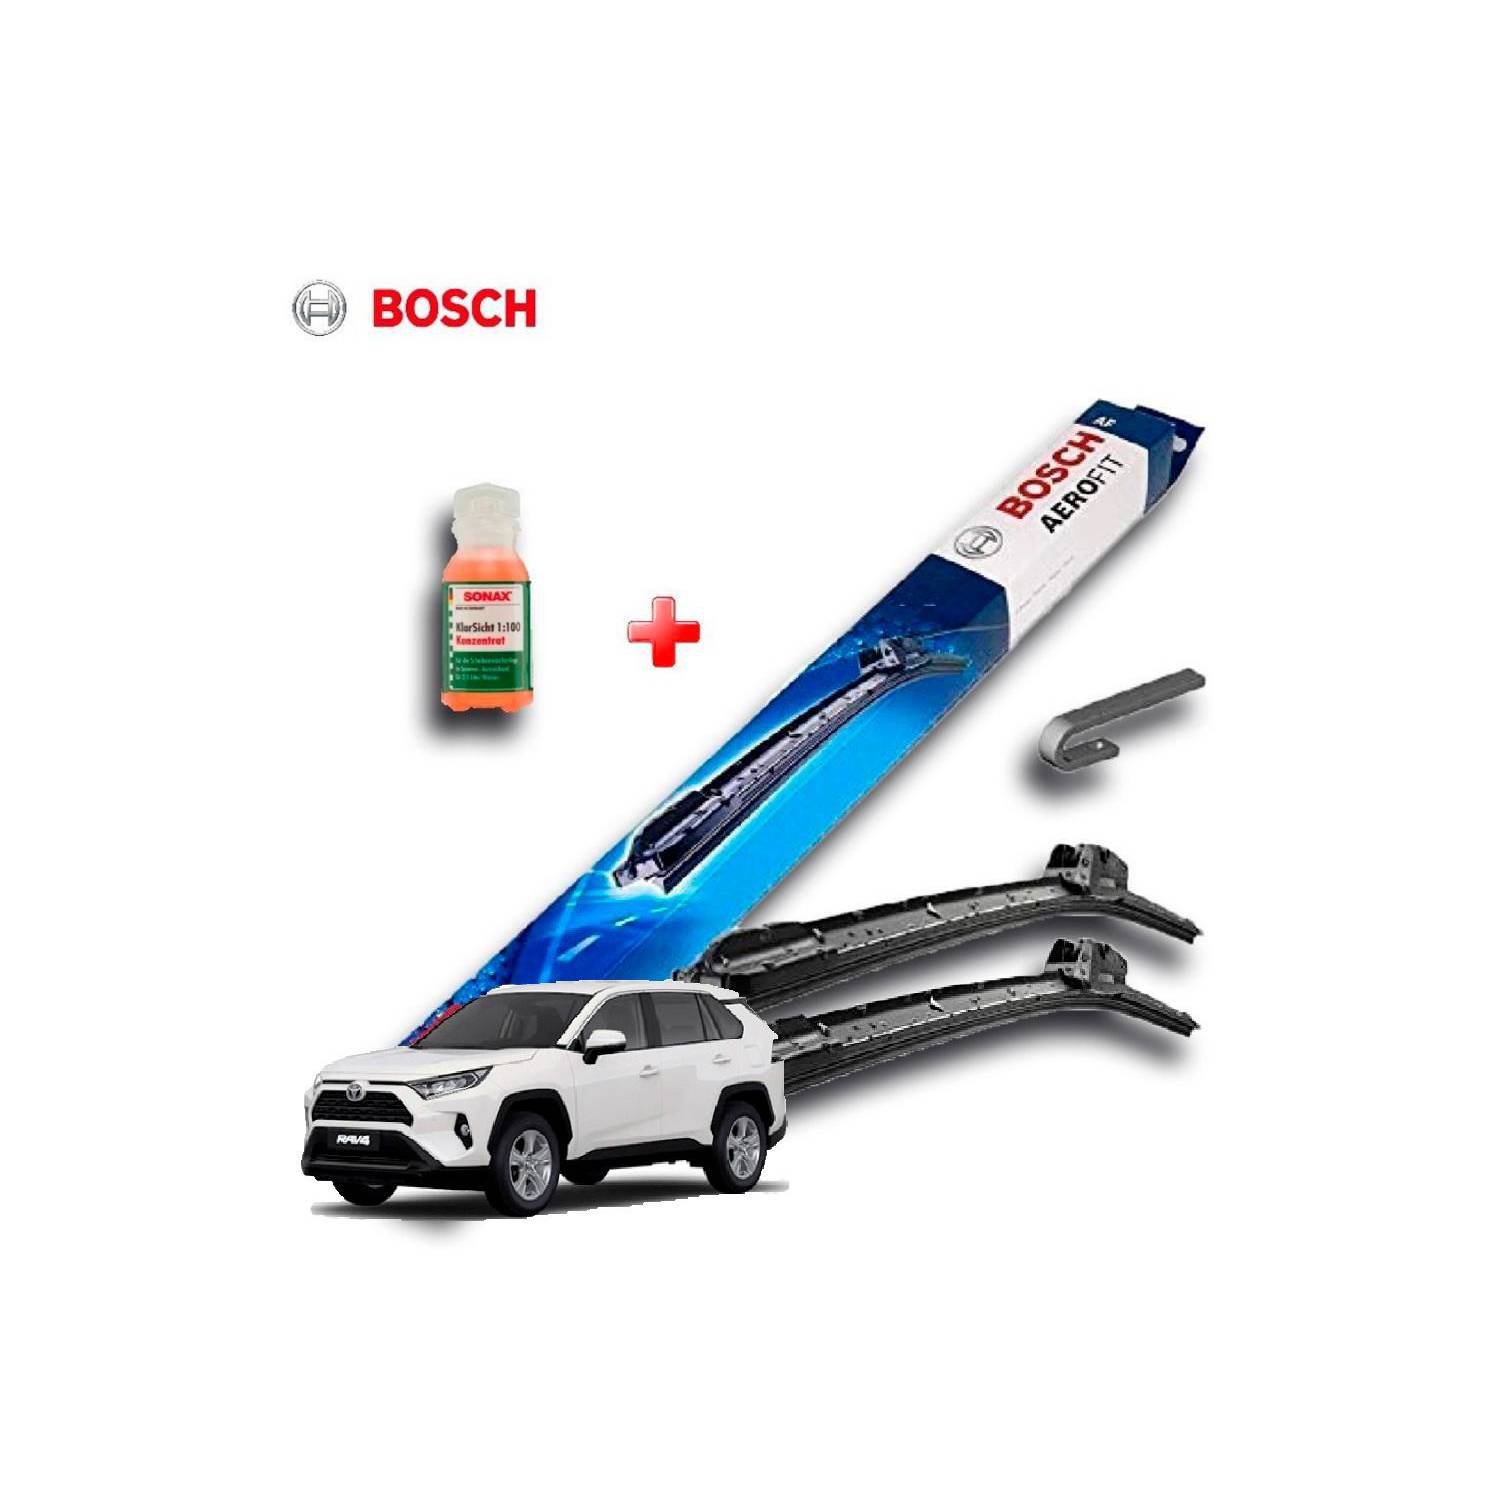 BOSCH Kit Plumillas Limpiaparabrisas Bosch 24 Y 16 Toyota rav4